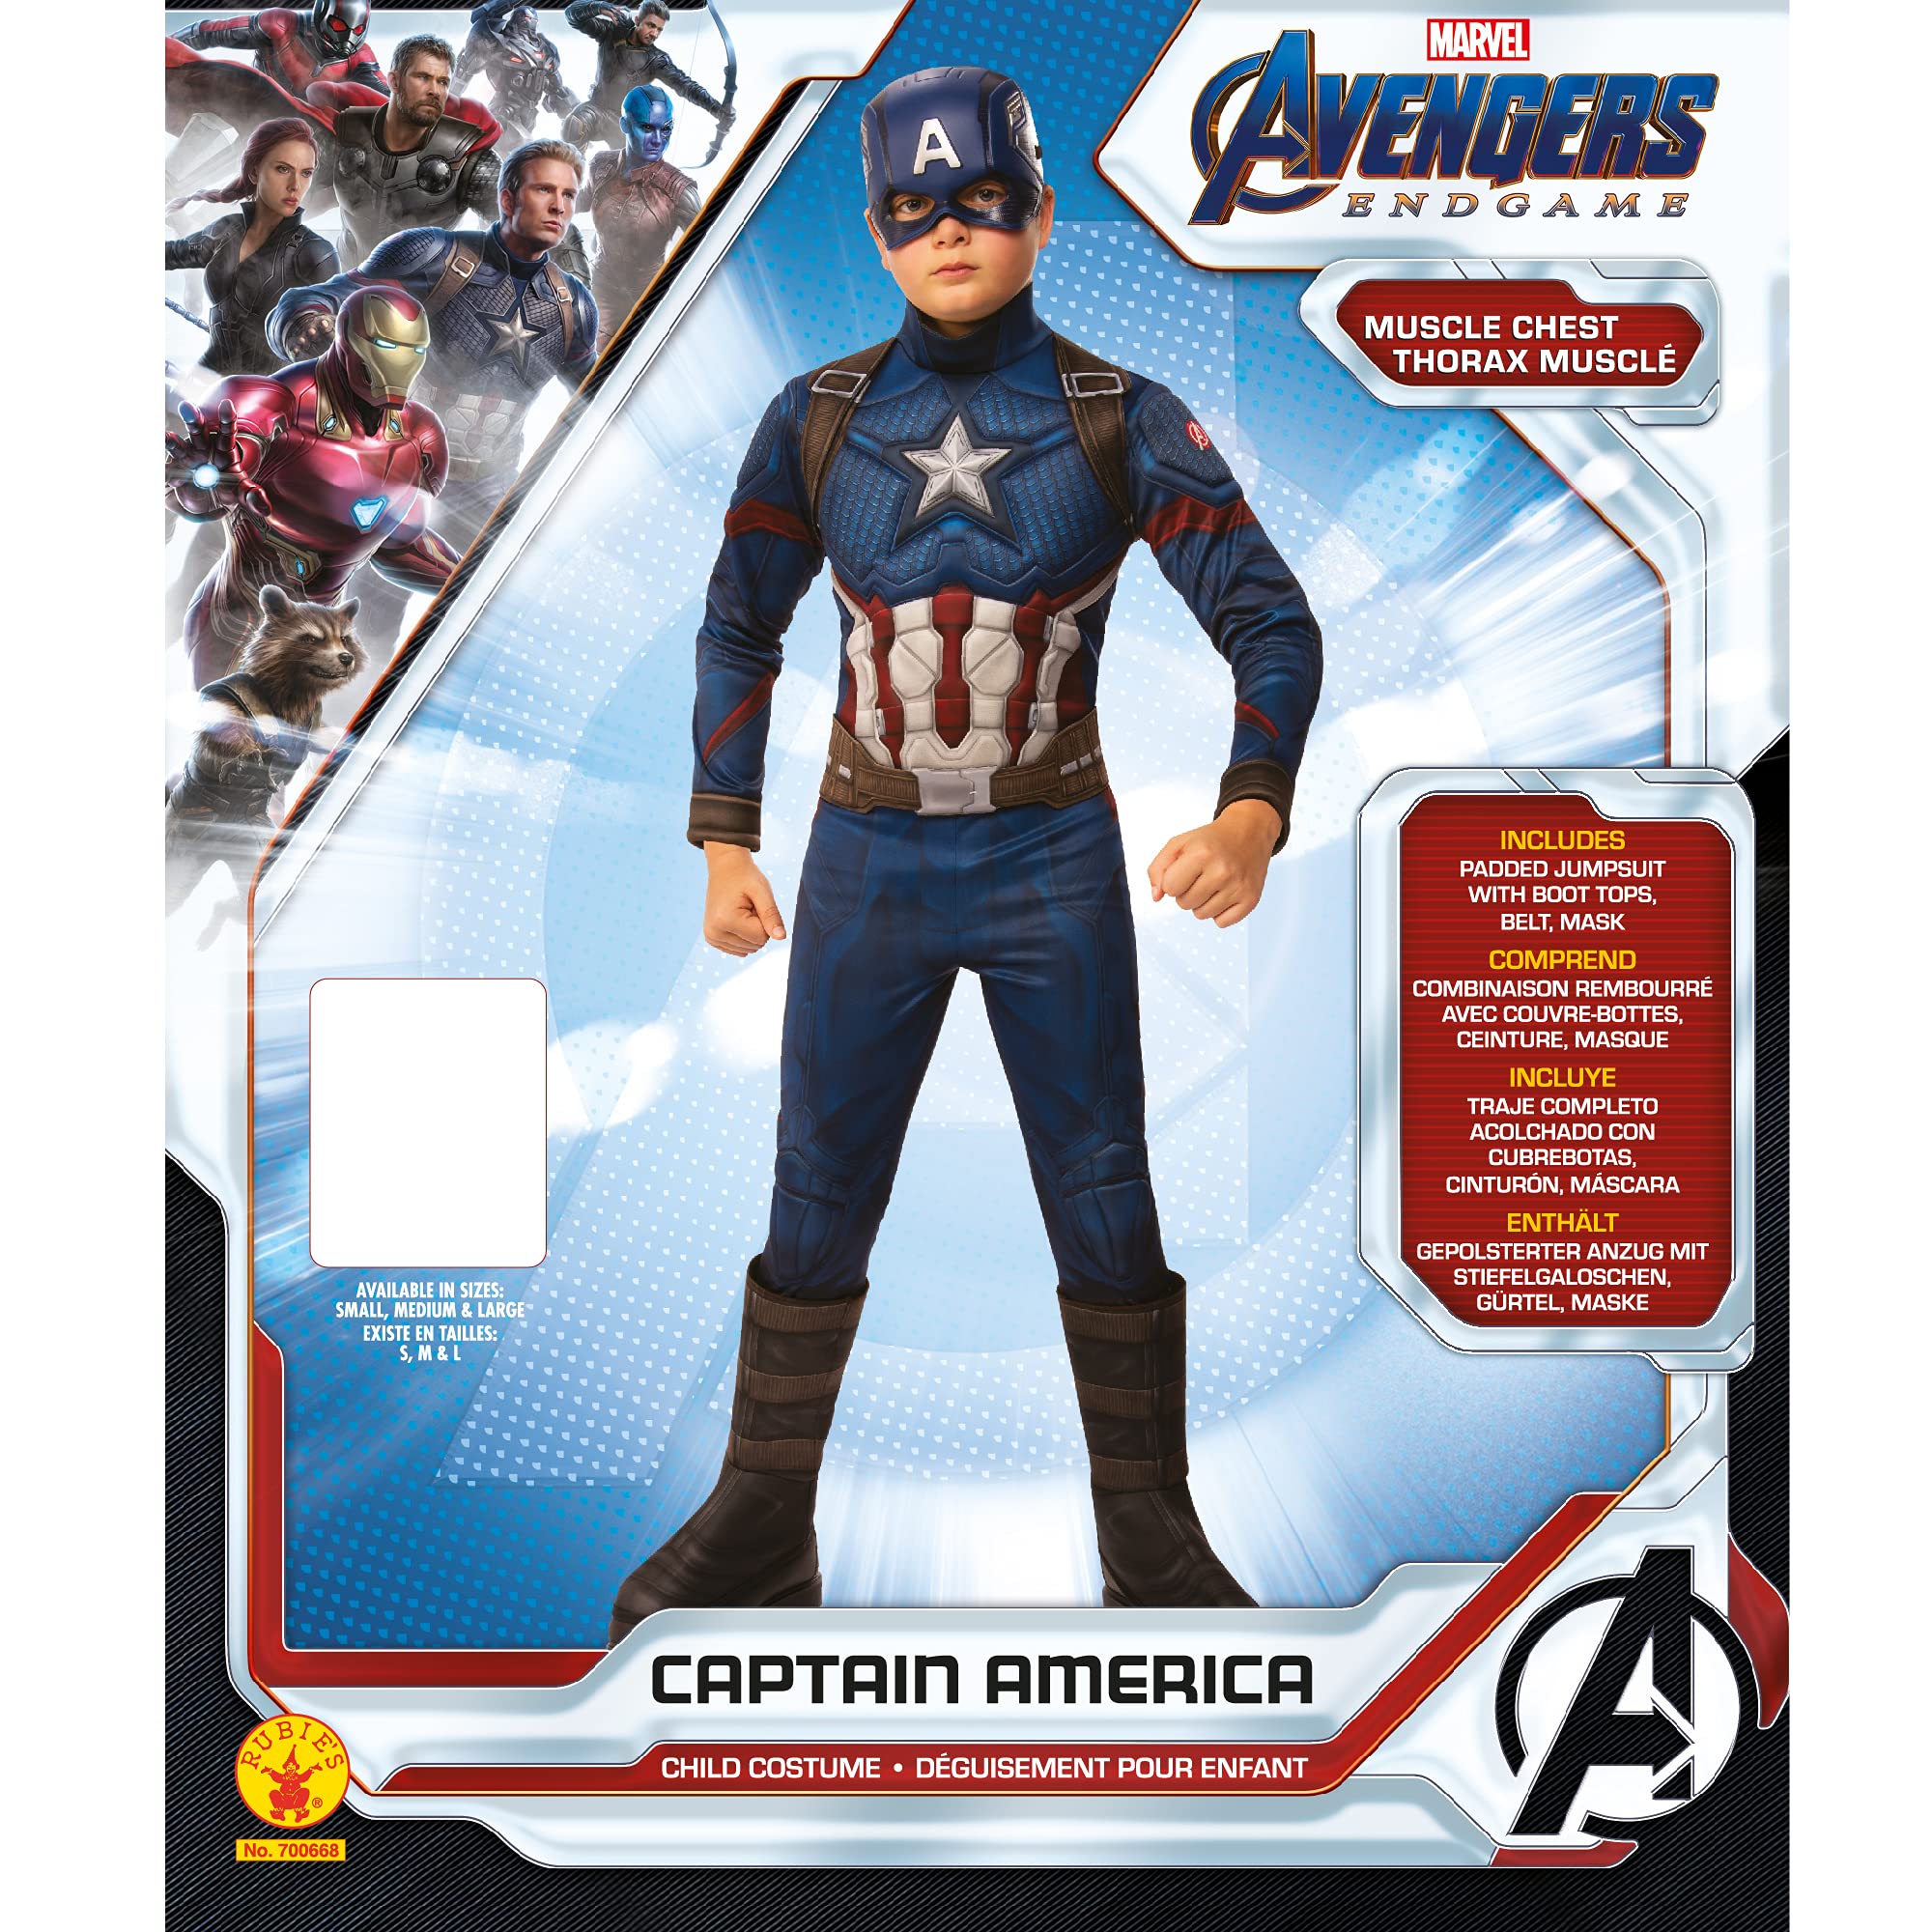 Rubie's Marvel: Avengers Endgame Child's Deluxe Captain America Costume & Mask